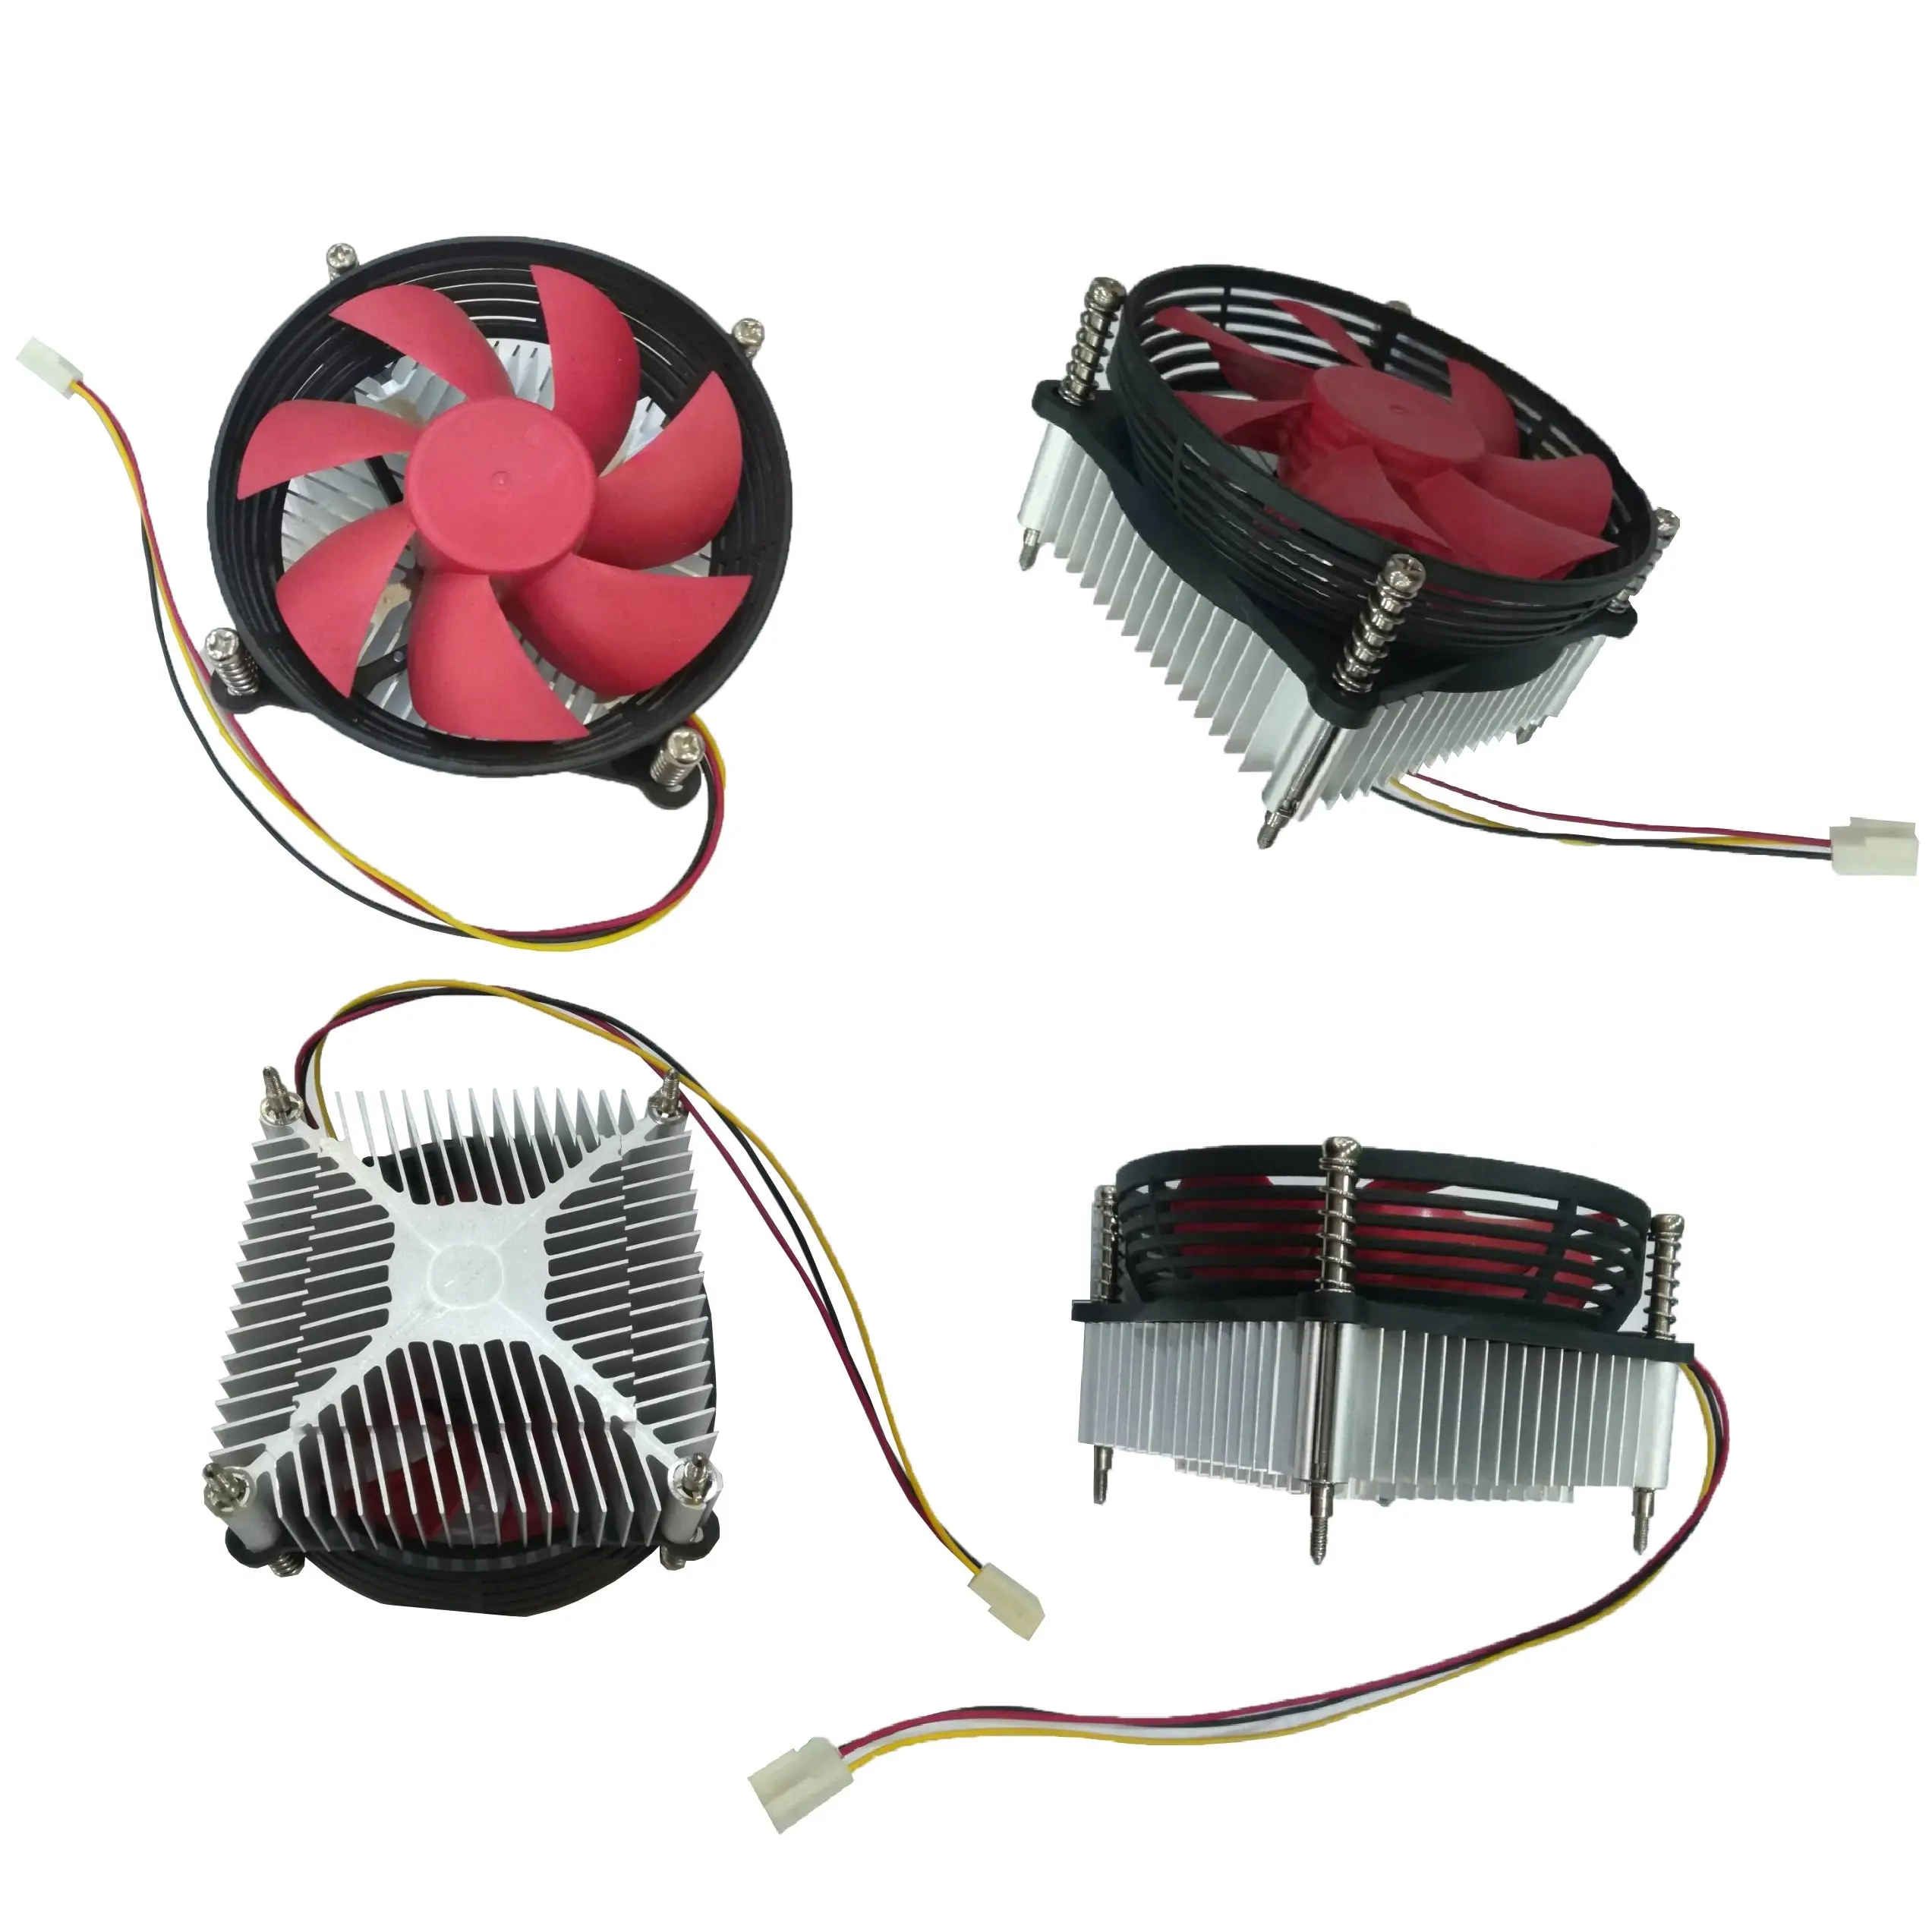 Enfriador de CPU barato fabricante Dongguan para PC procesador Intel socket LGA775 ventilador disipador de calor de aluminio